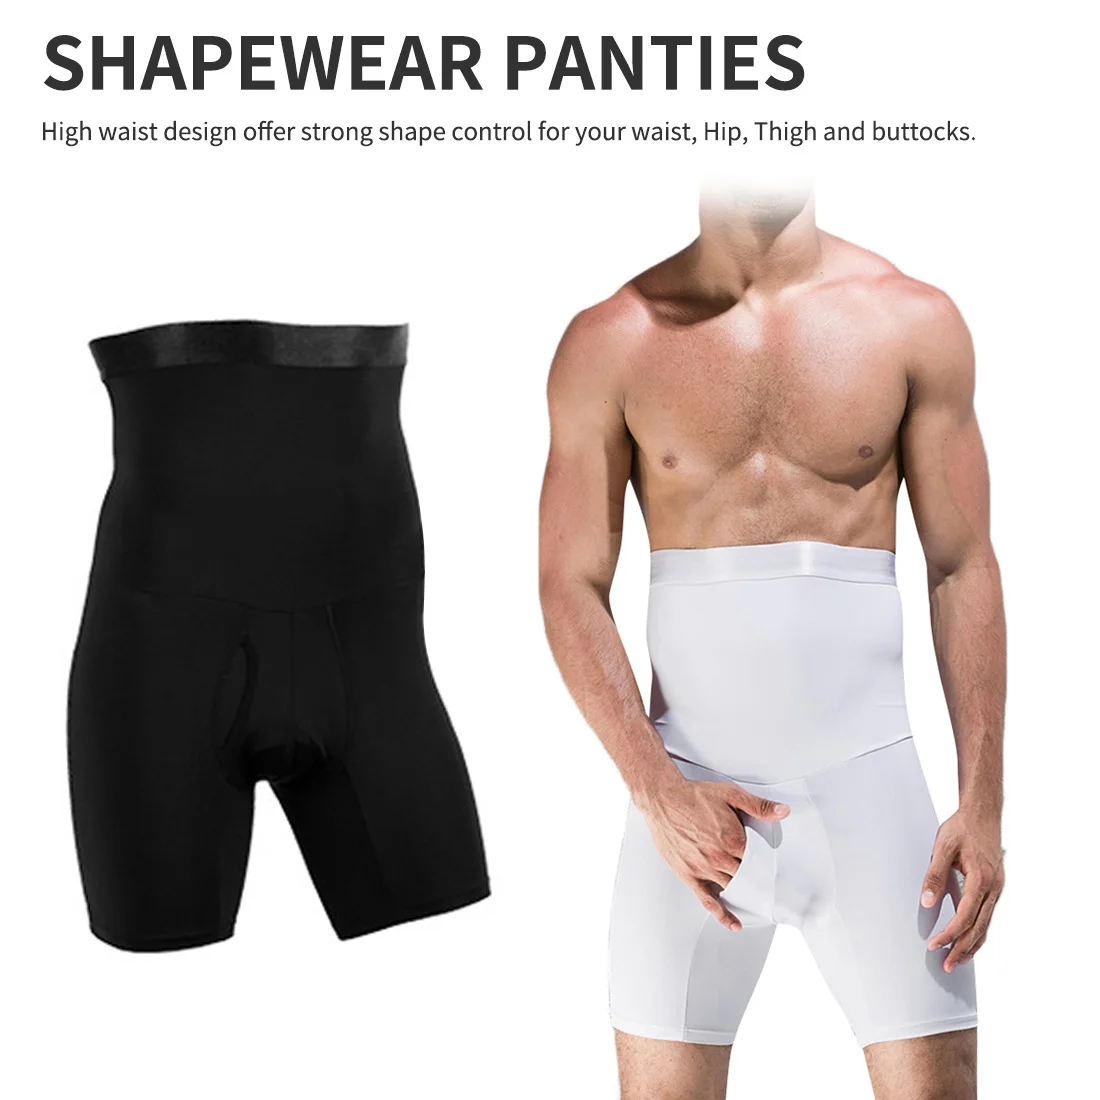 Мужские Компрессионные шорты для коррекции фигуры, Утягивающие шорты, Корректирующее белье для похудения, моделирующий пояс, трусы-боксеры, нижнее белье